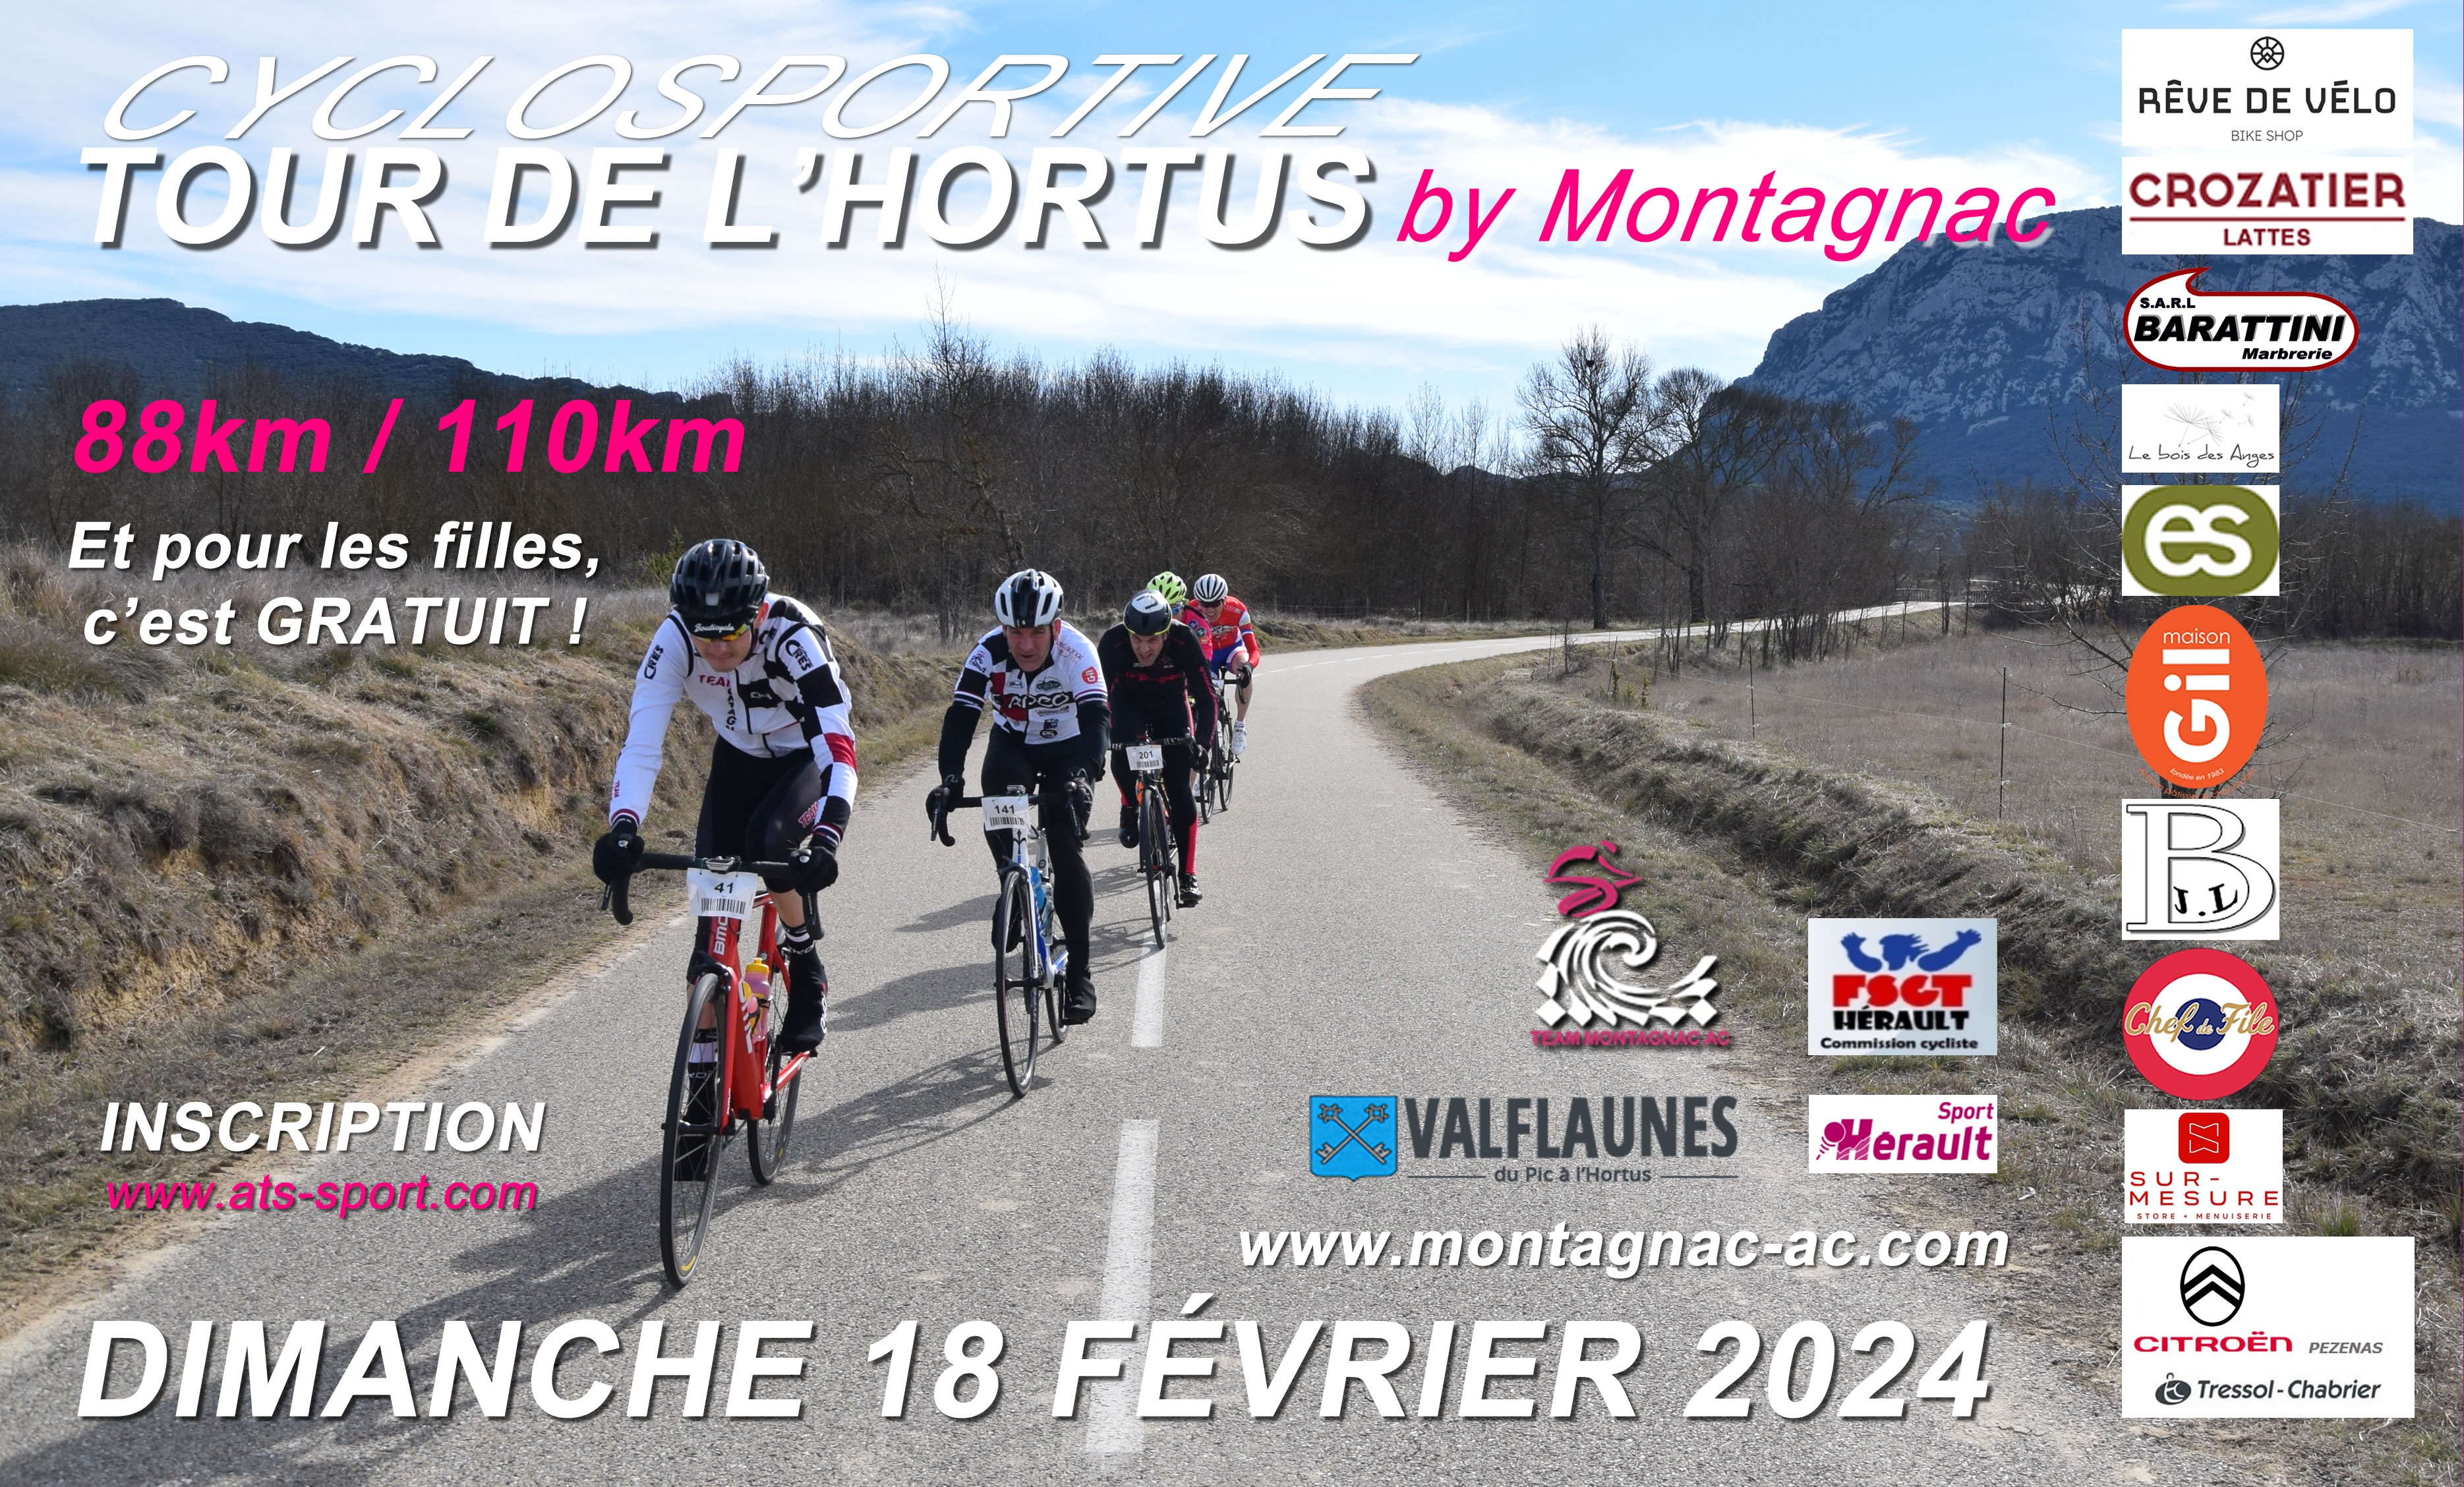 TOUR DE L'HORTUS by Montagnac